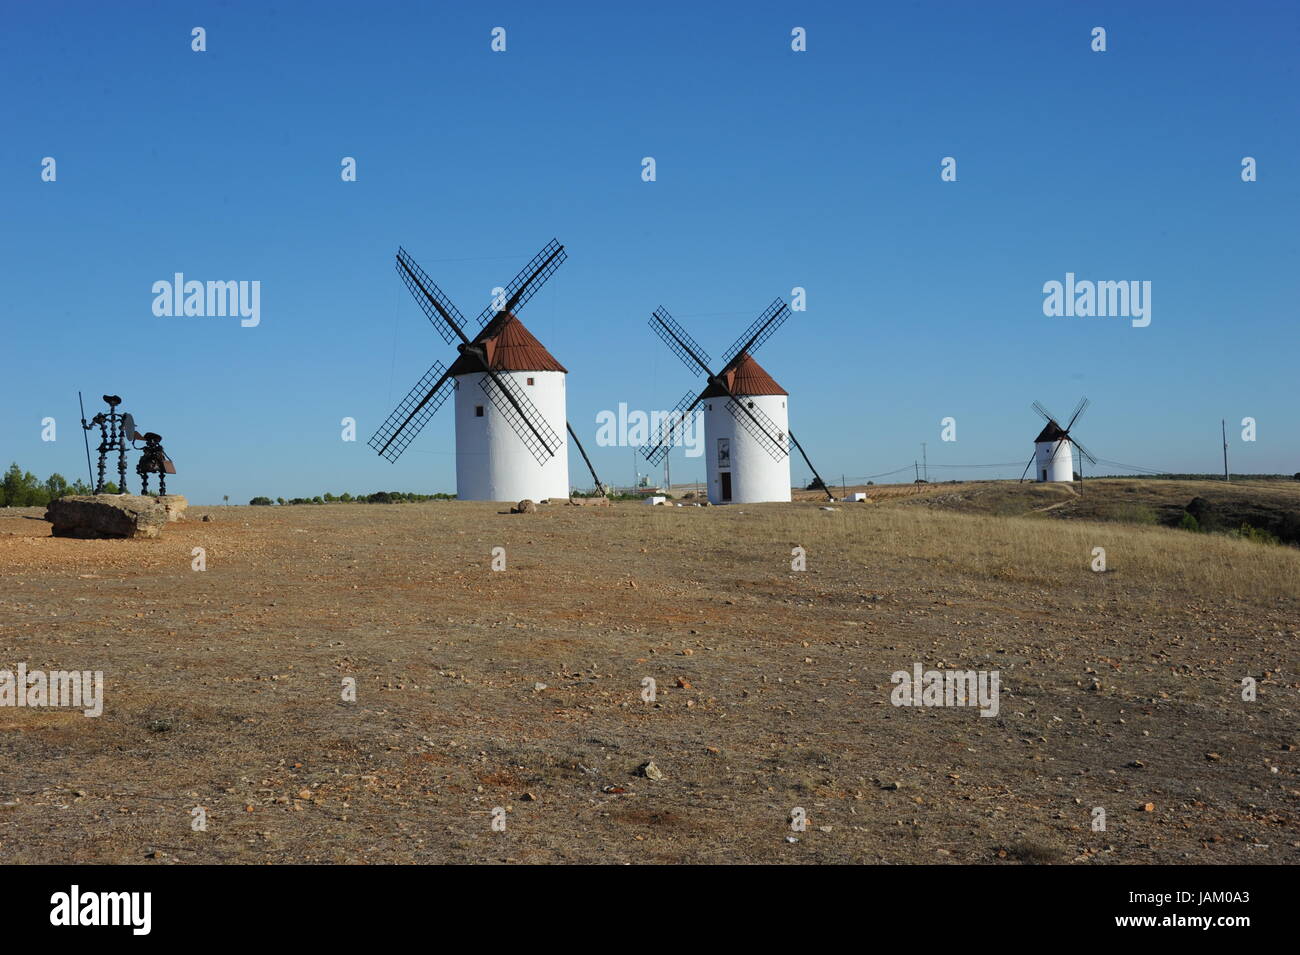 spain - windmill in la mancha - cervantes / don quijote Stock Photo